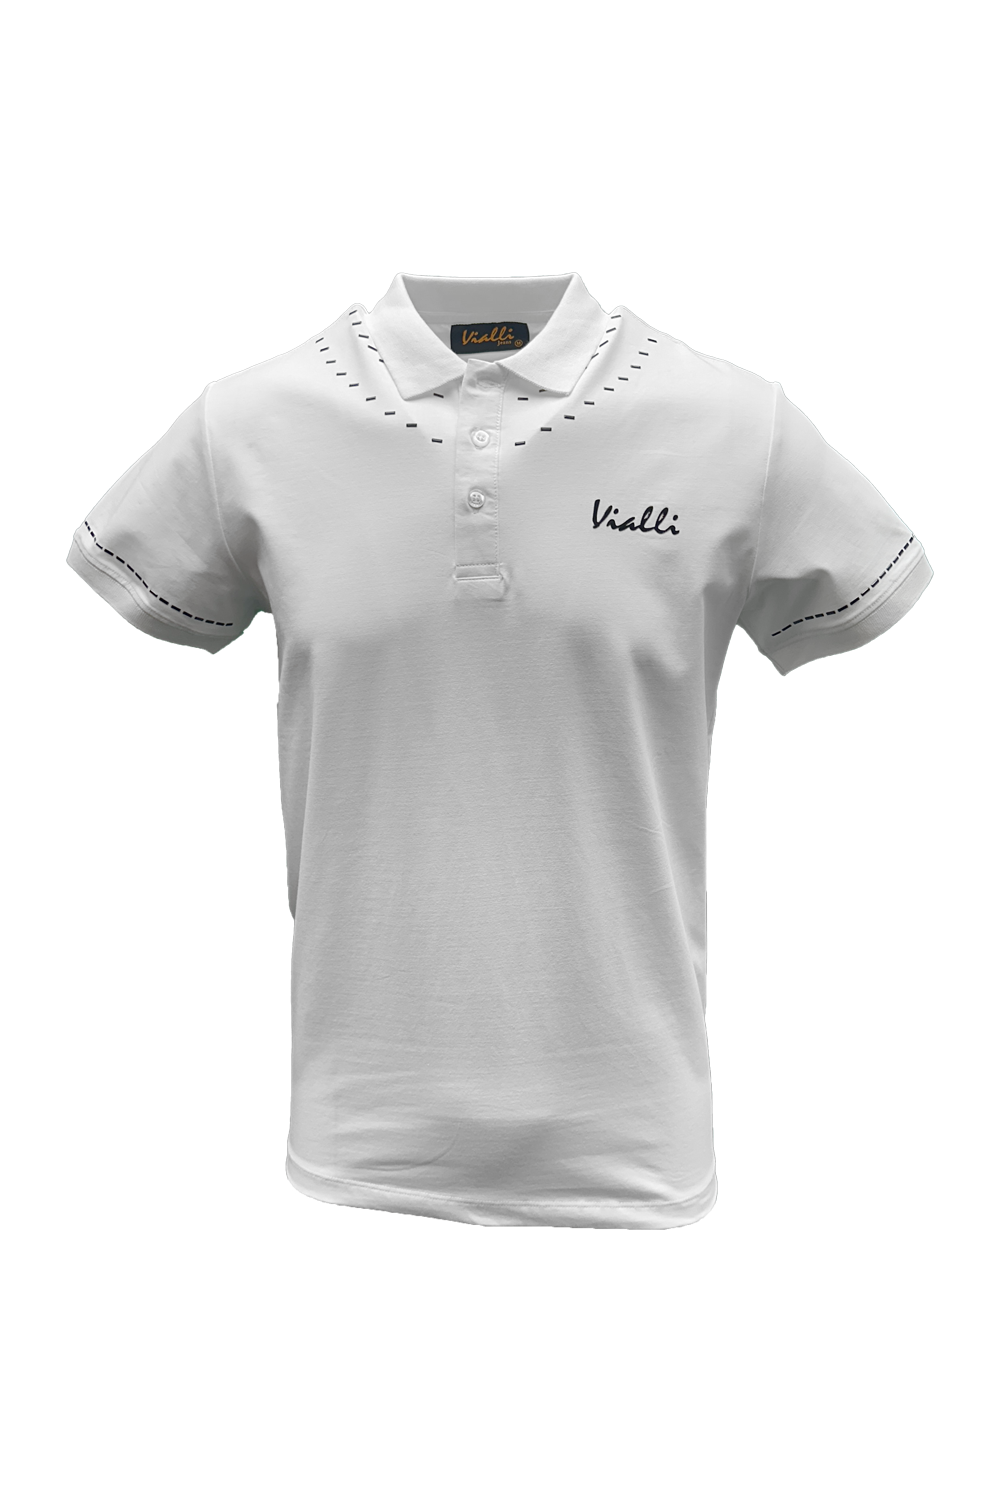 Vialli Vj23Sm123  Flames Golfer T-Shirt White